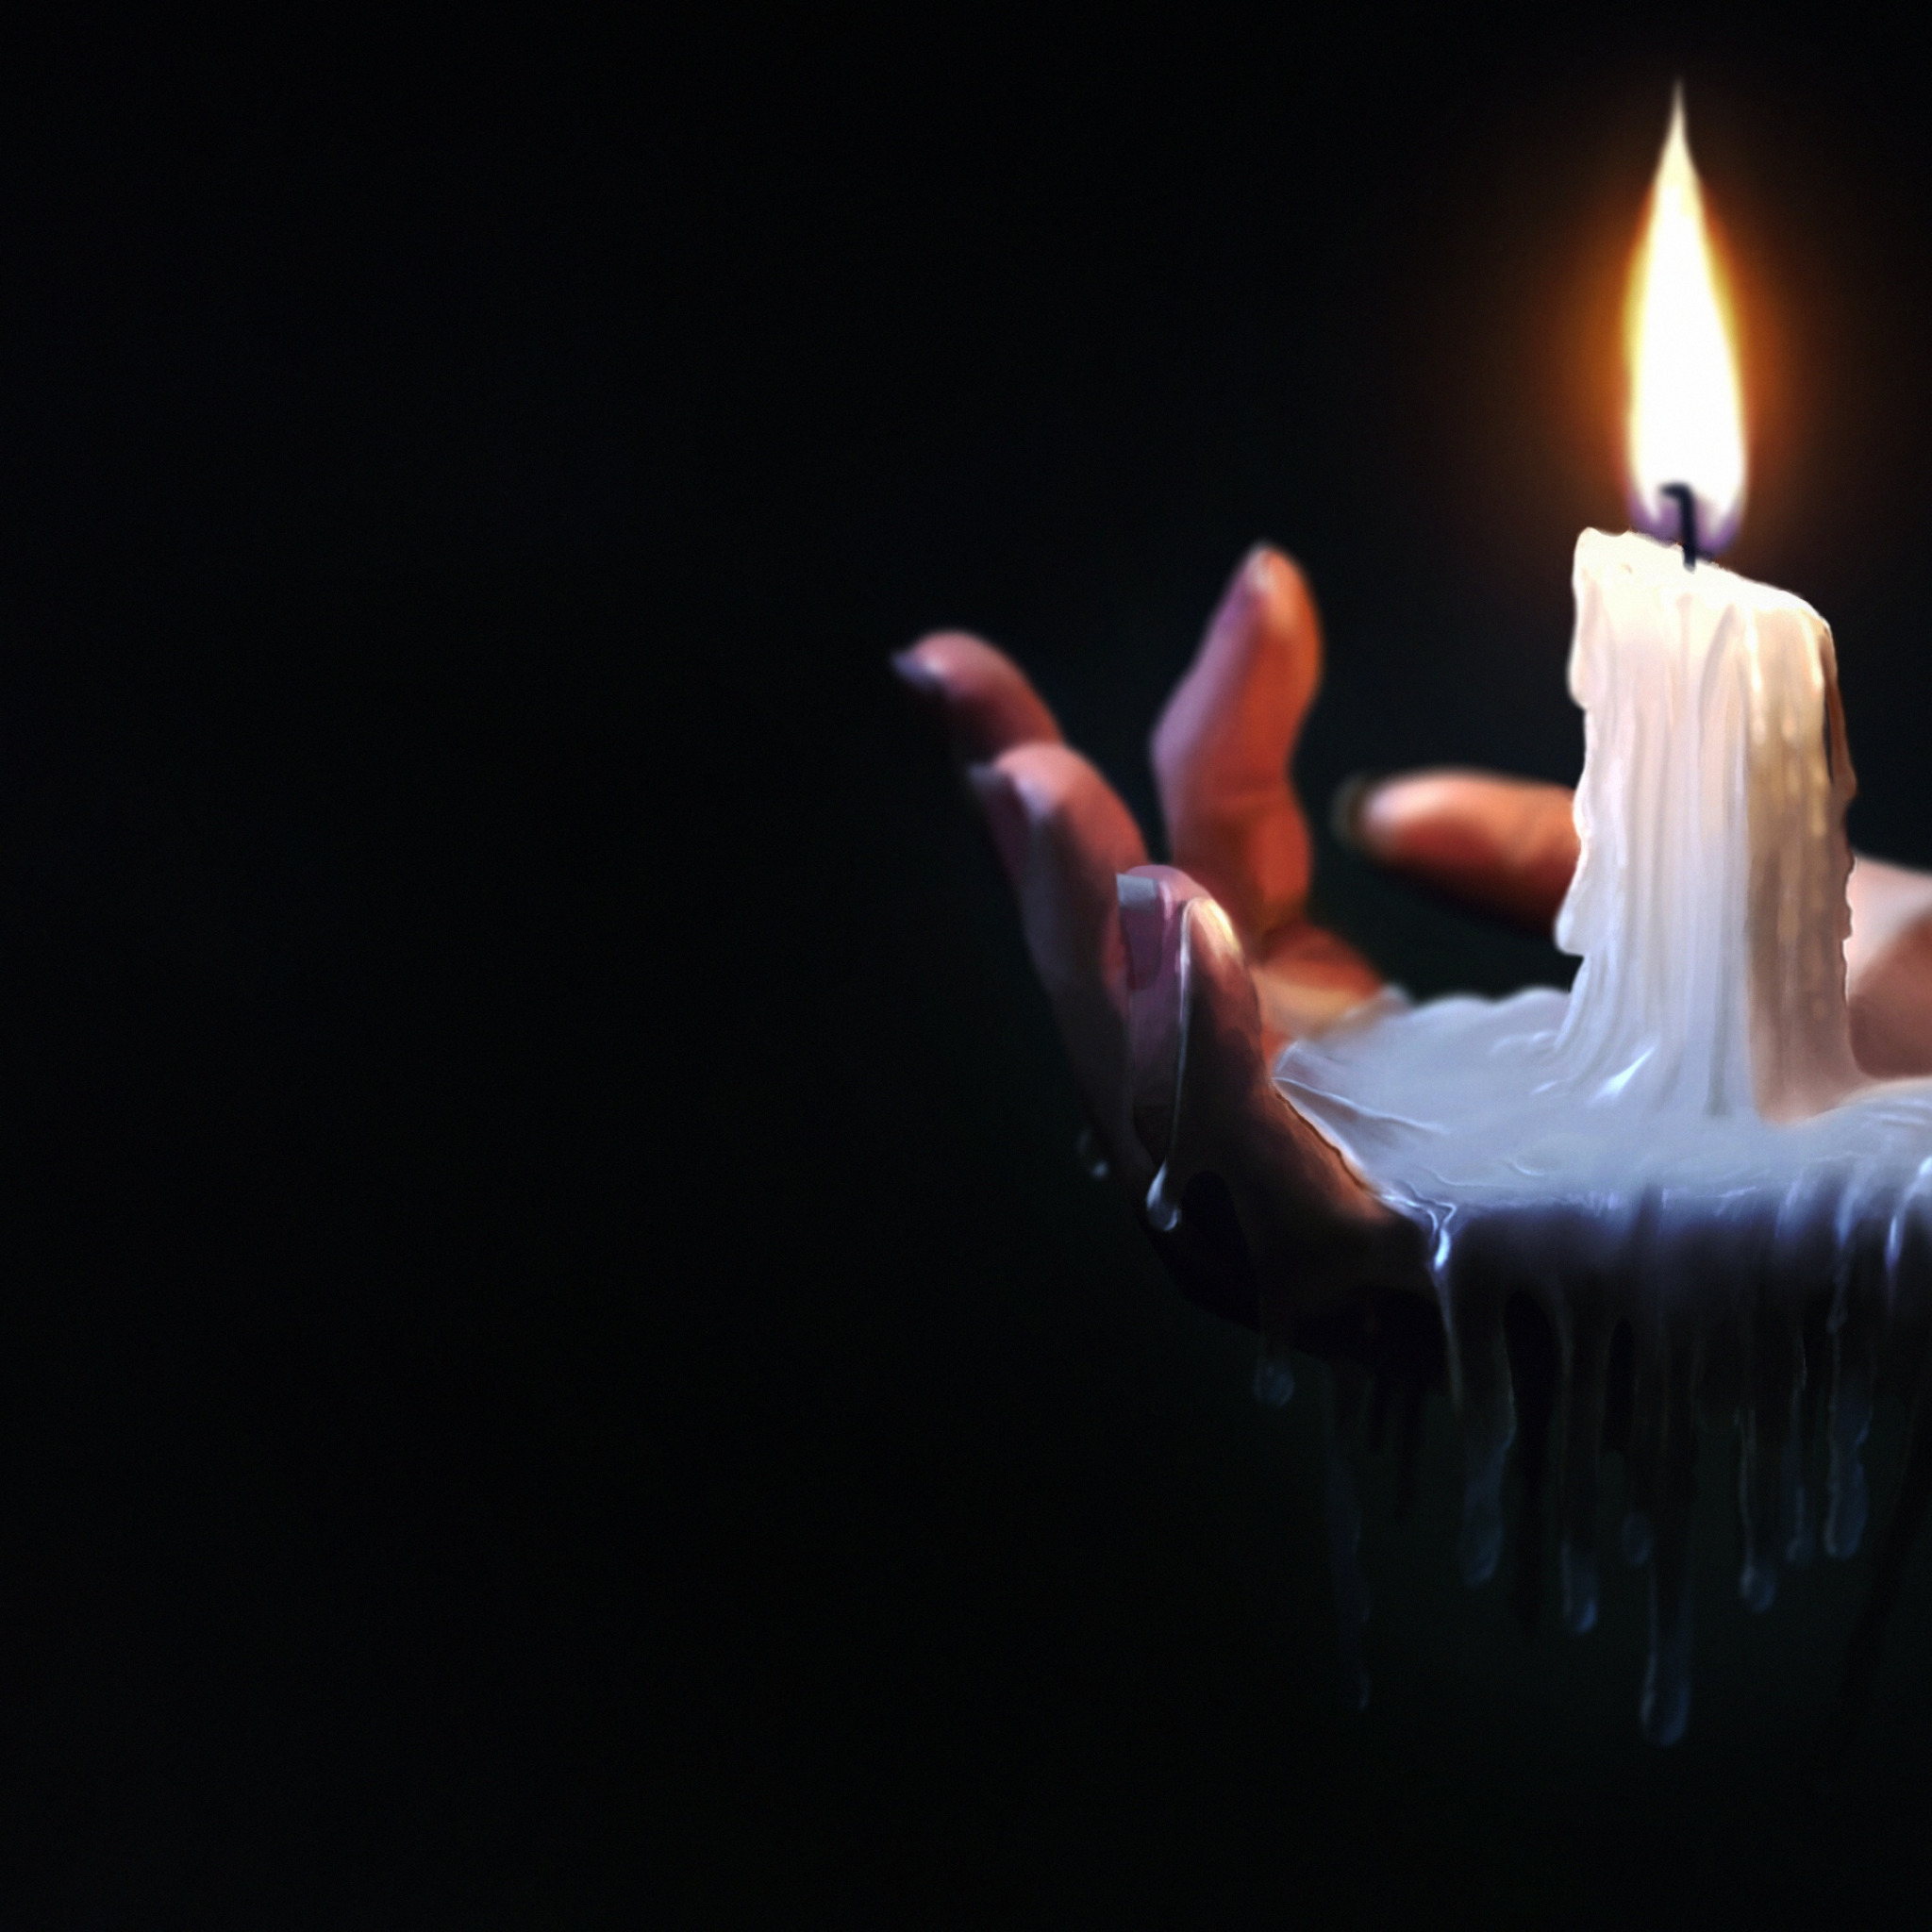 Свеча горит в руке. Горящая свеча. Свеча в руках. Свечи мистика. Свеча горела.